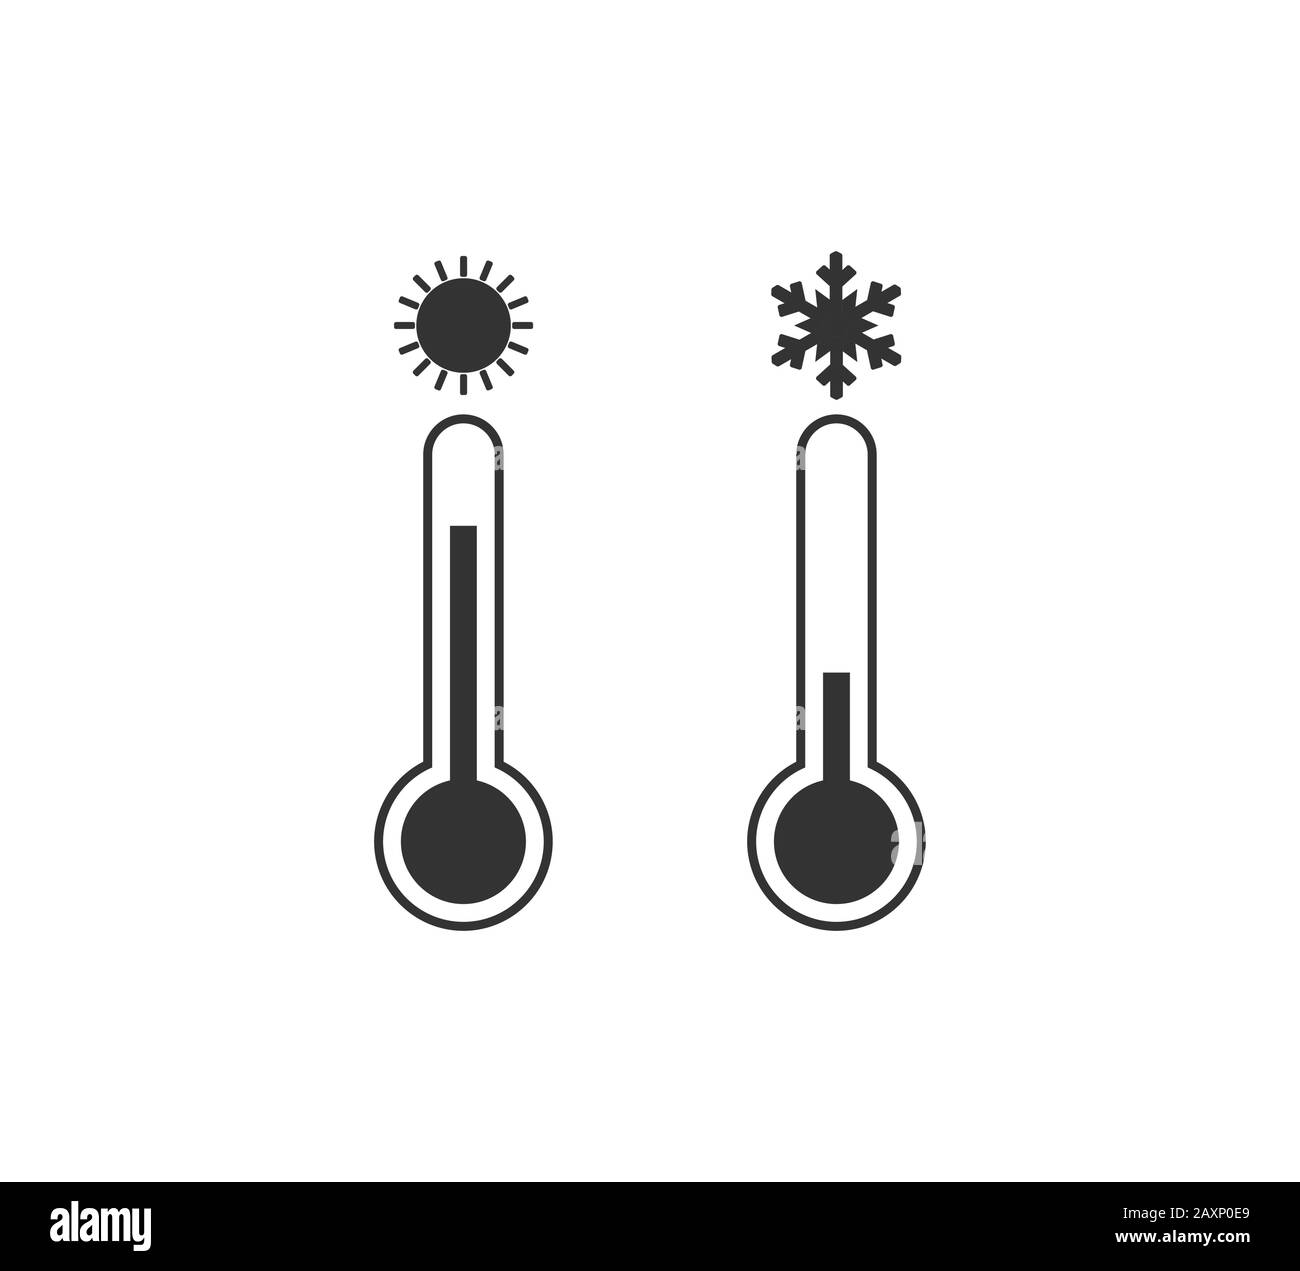 Symbol für heiße und kalte Temperatur. Vektorgrafiken, flaches Design. Stock Vektor